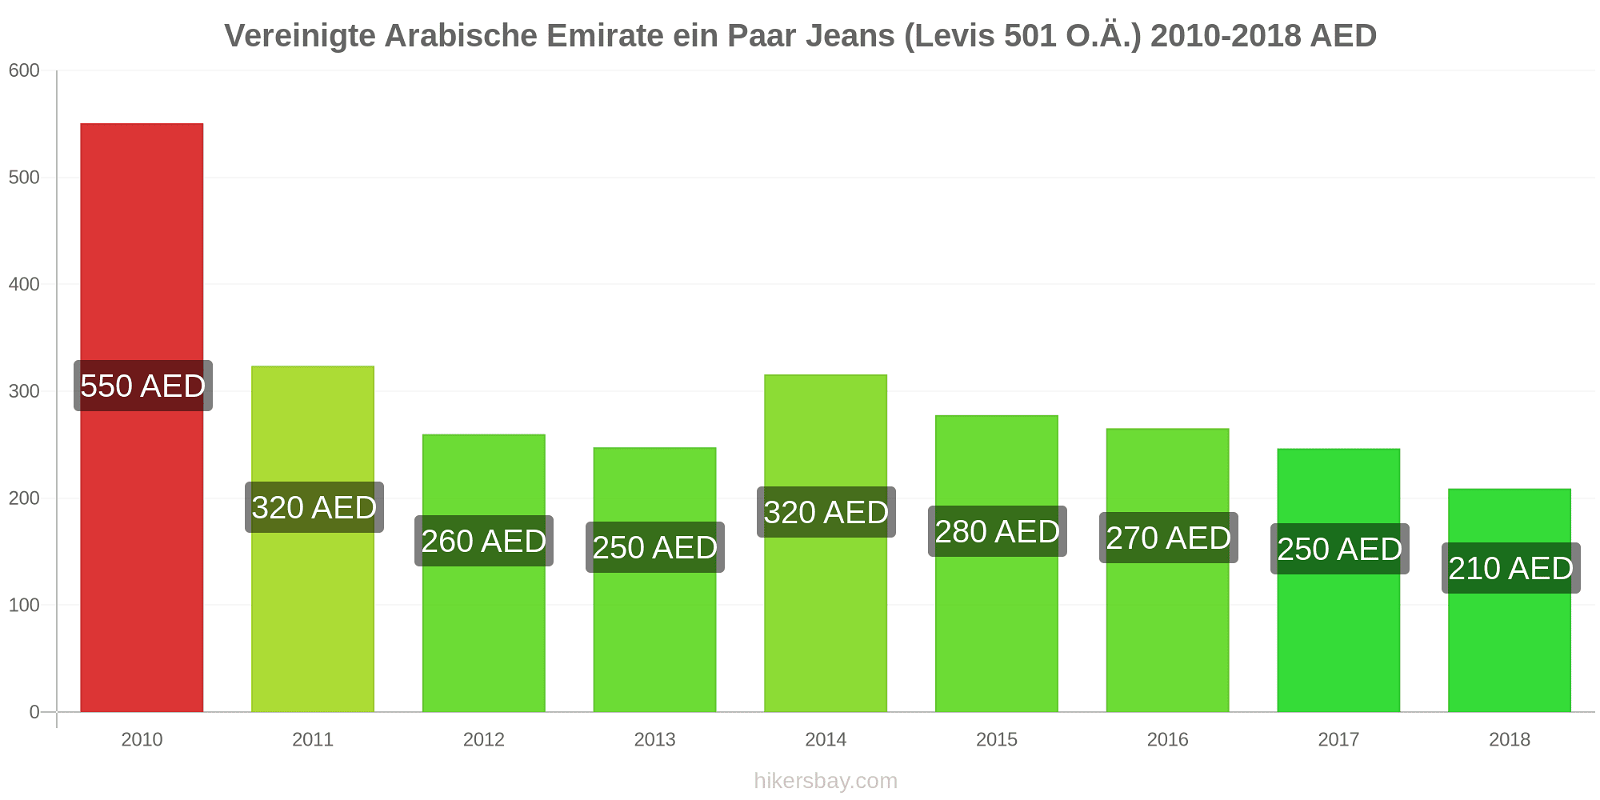 Vereinigte Arabische Emirate Preisänderungen 1 Paar Jeans (Levis 501 oder ähnlich) hikersbay.com